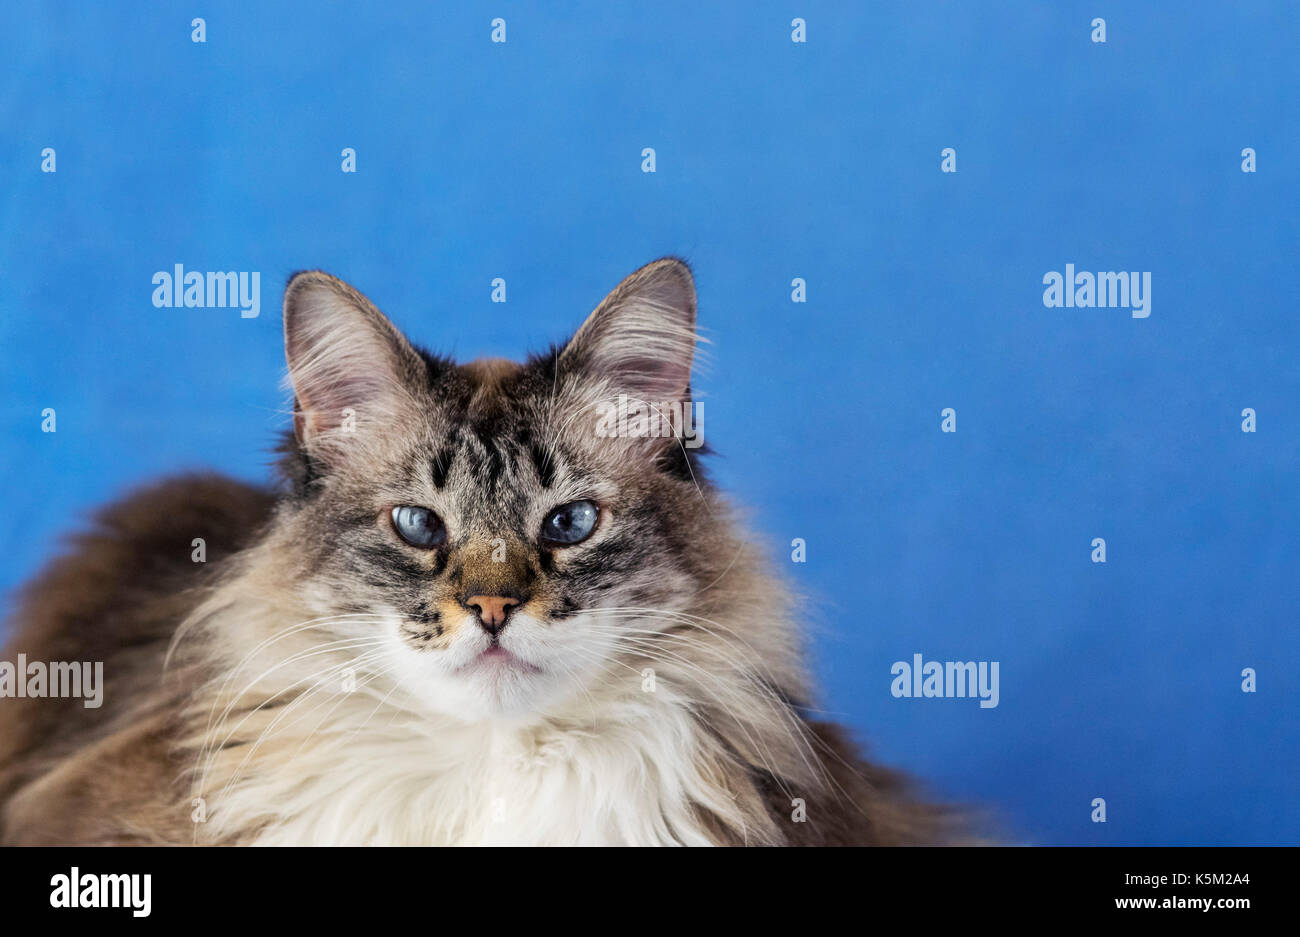 Blue eyed soffice bianco e grigio cat con lunghi peli di pelliccia, guardando direttamente nella fotocamera, giallo naso e orecchie appuntite, su uno sfondo blu Foto Stock